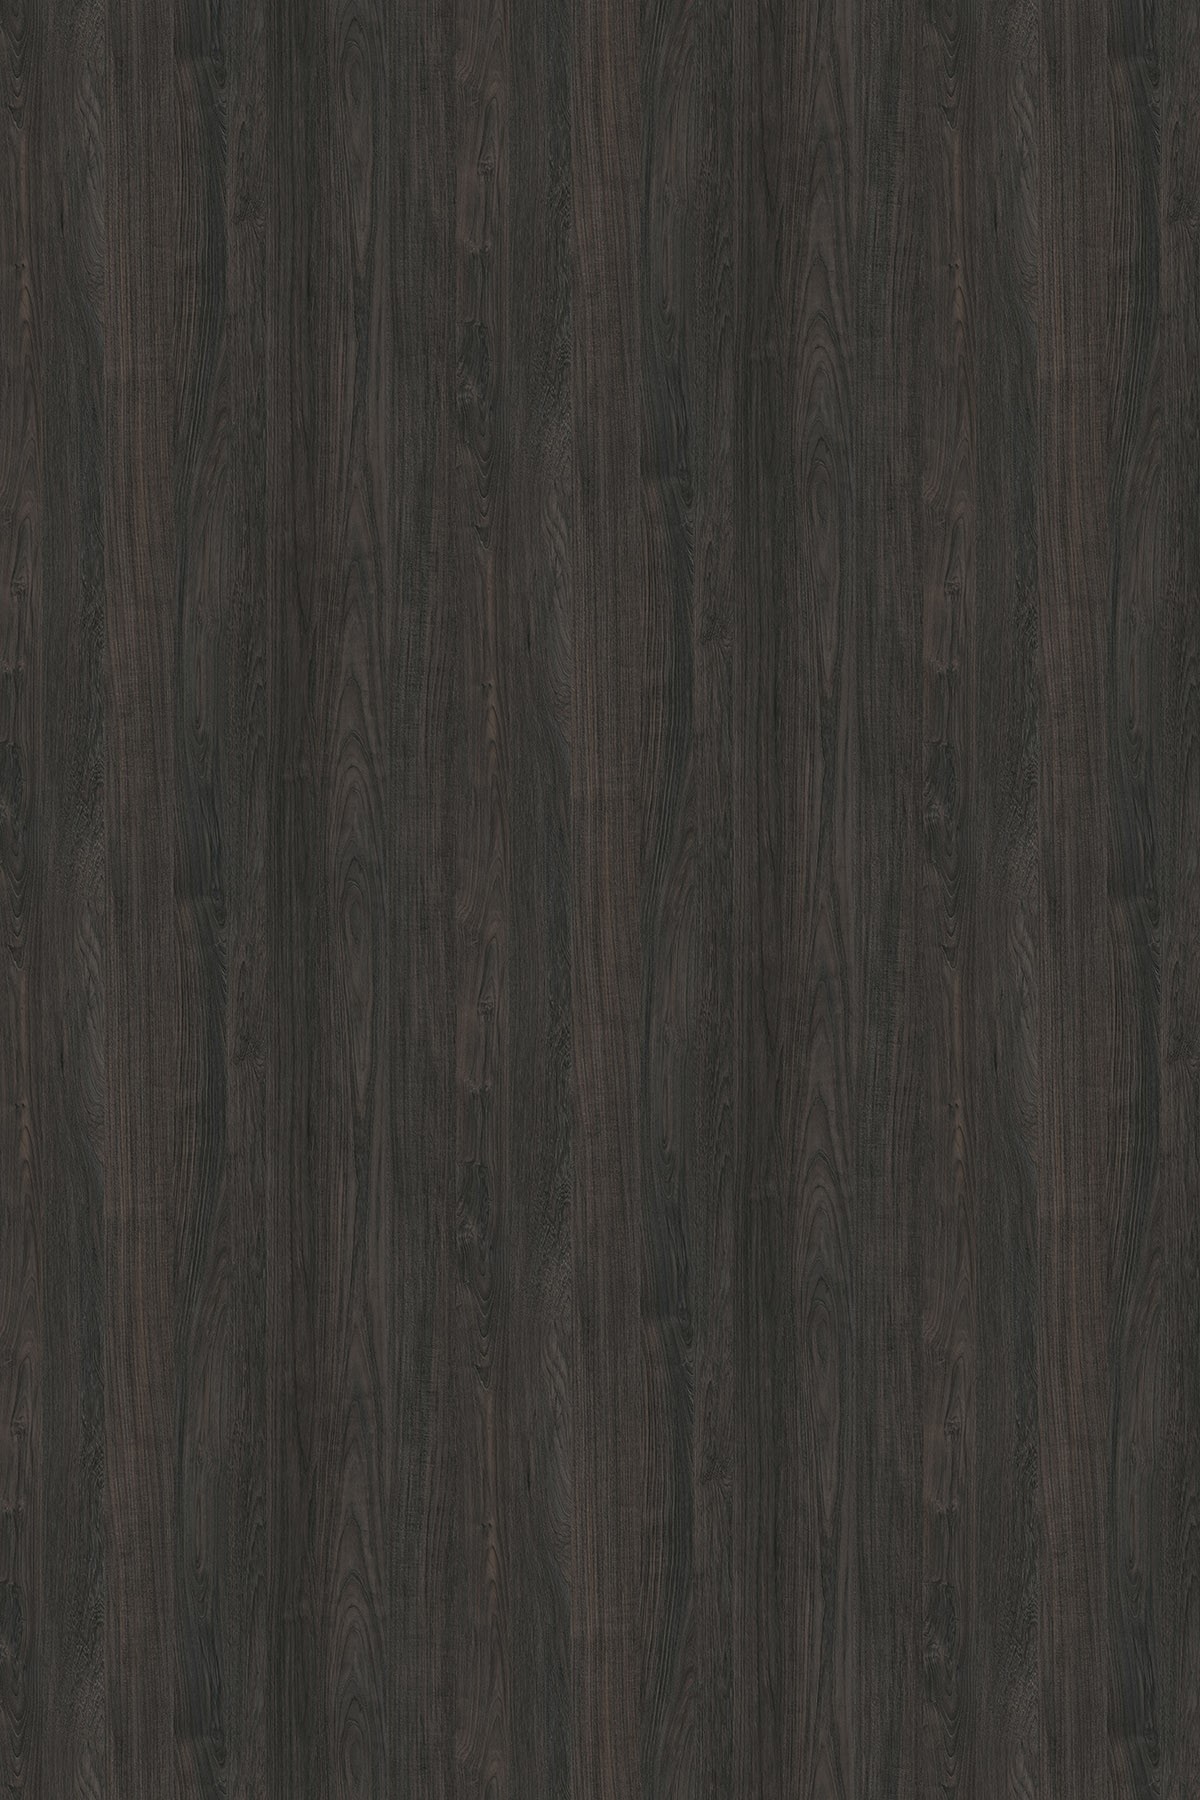 LTD Carbon Marine Wood K016 PW 2800 x 2070 x 18mm